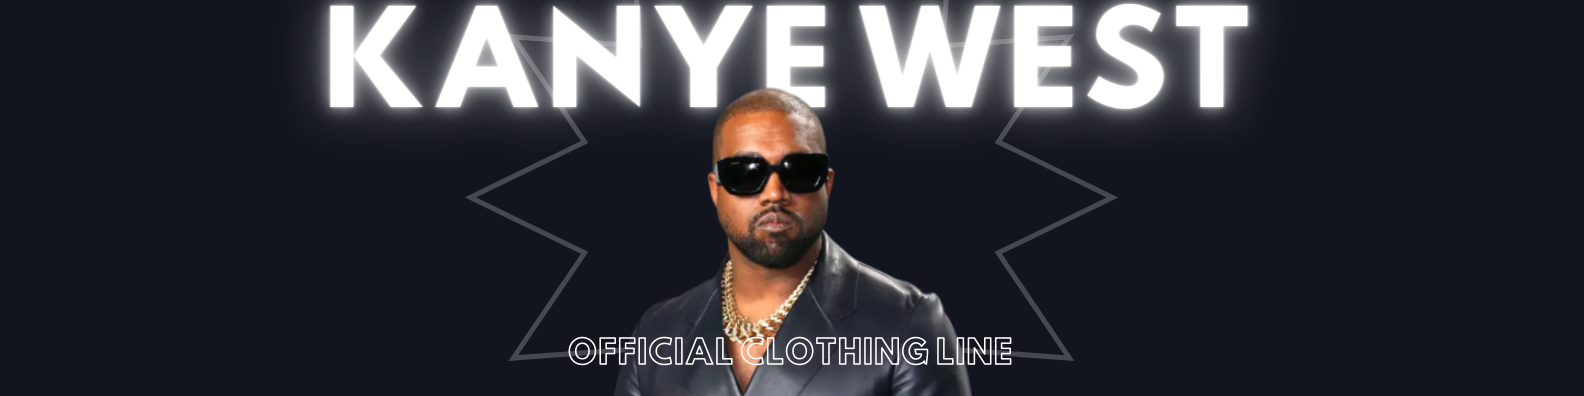 kanye west clothing line